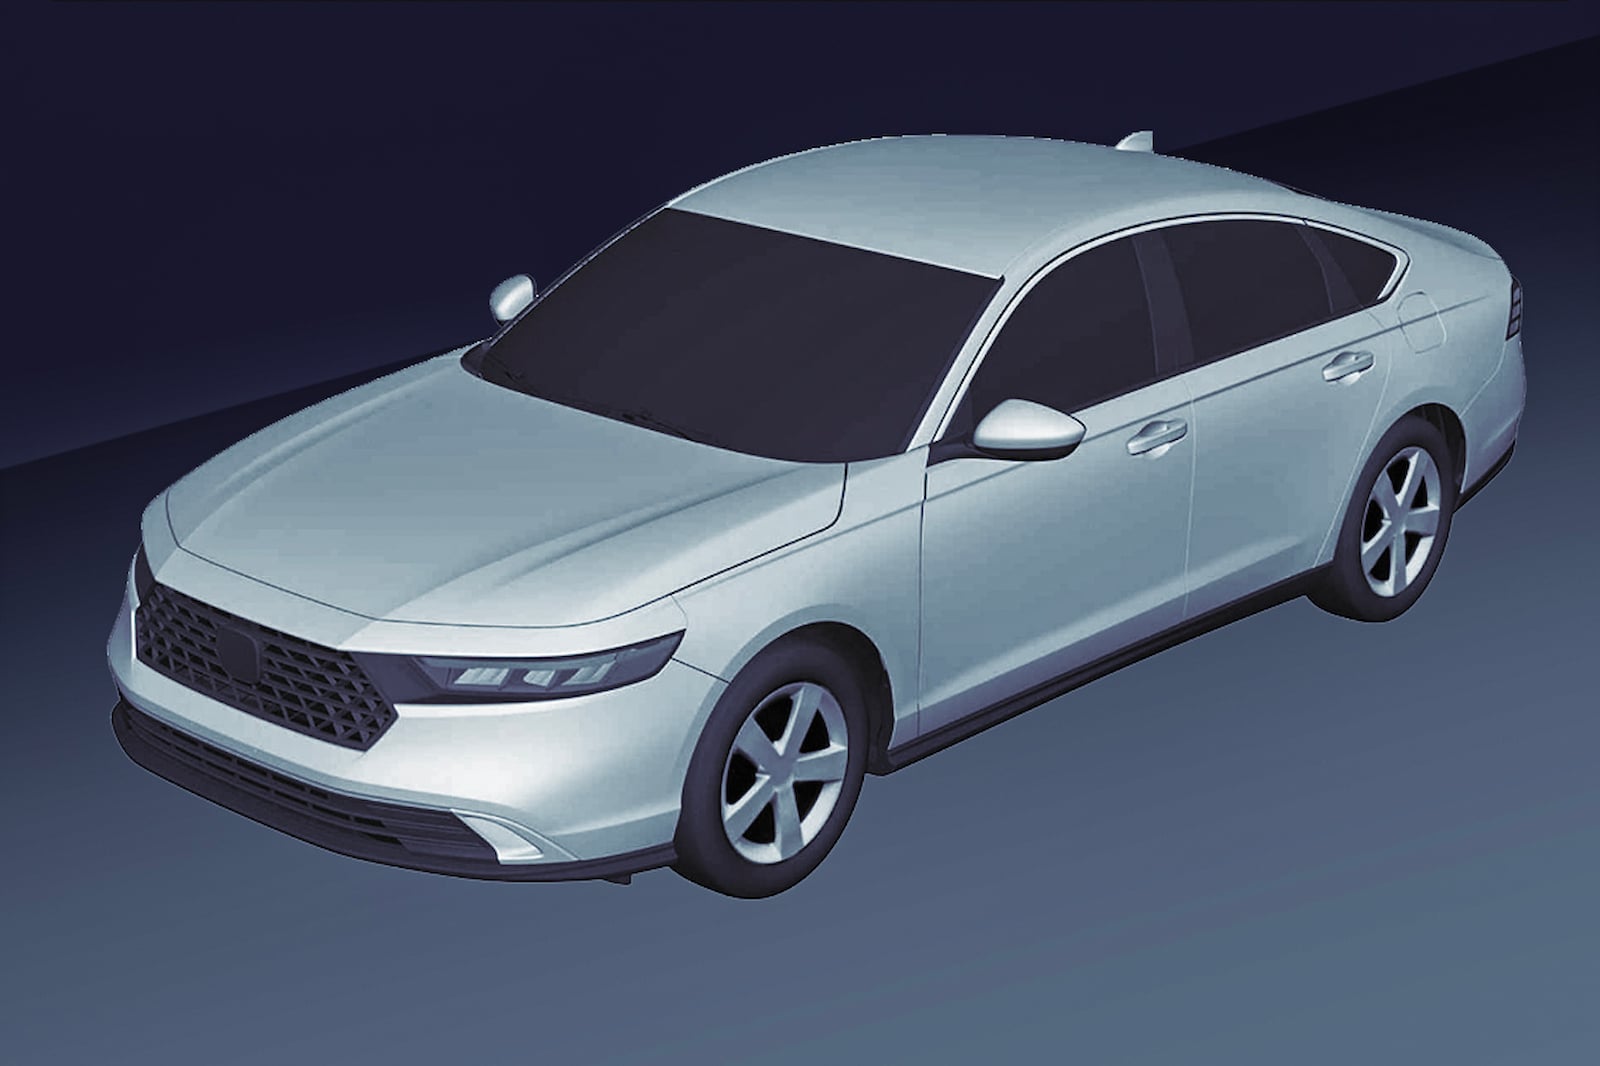 Honda Accord mới lộ ảnh thiết kế đăng ký sở hữu công nghiệp